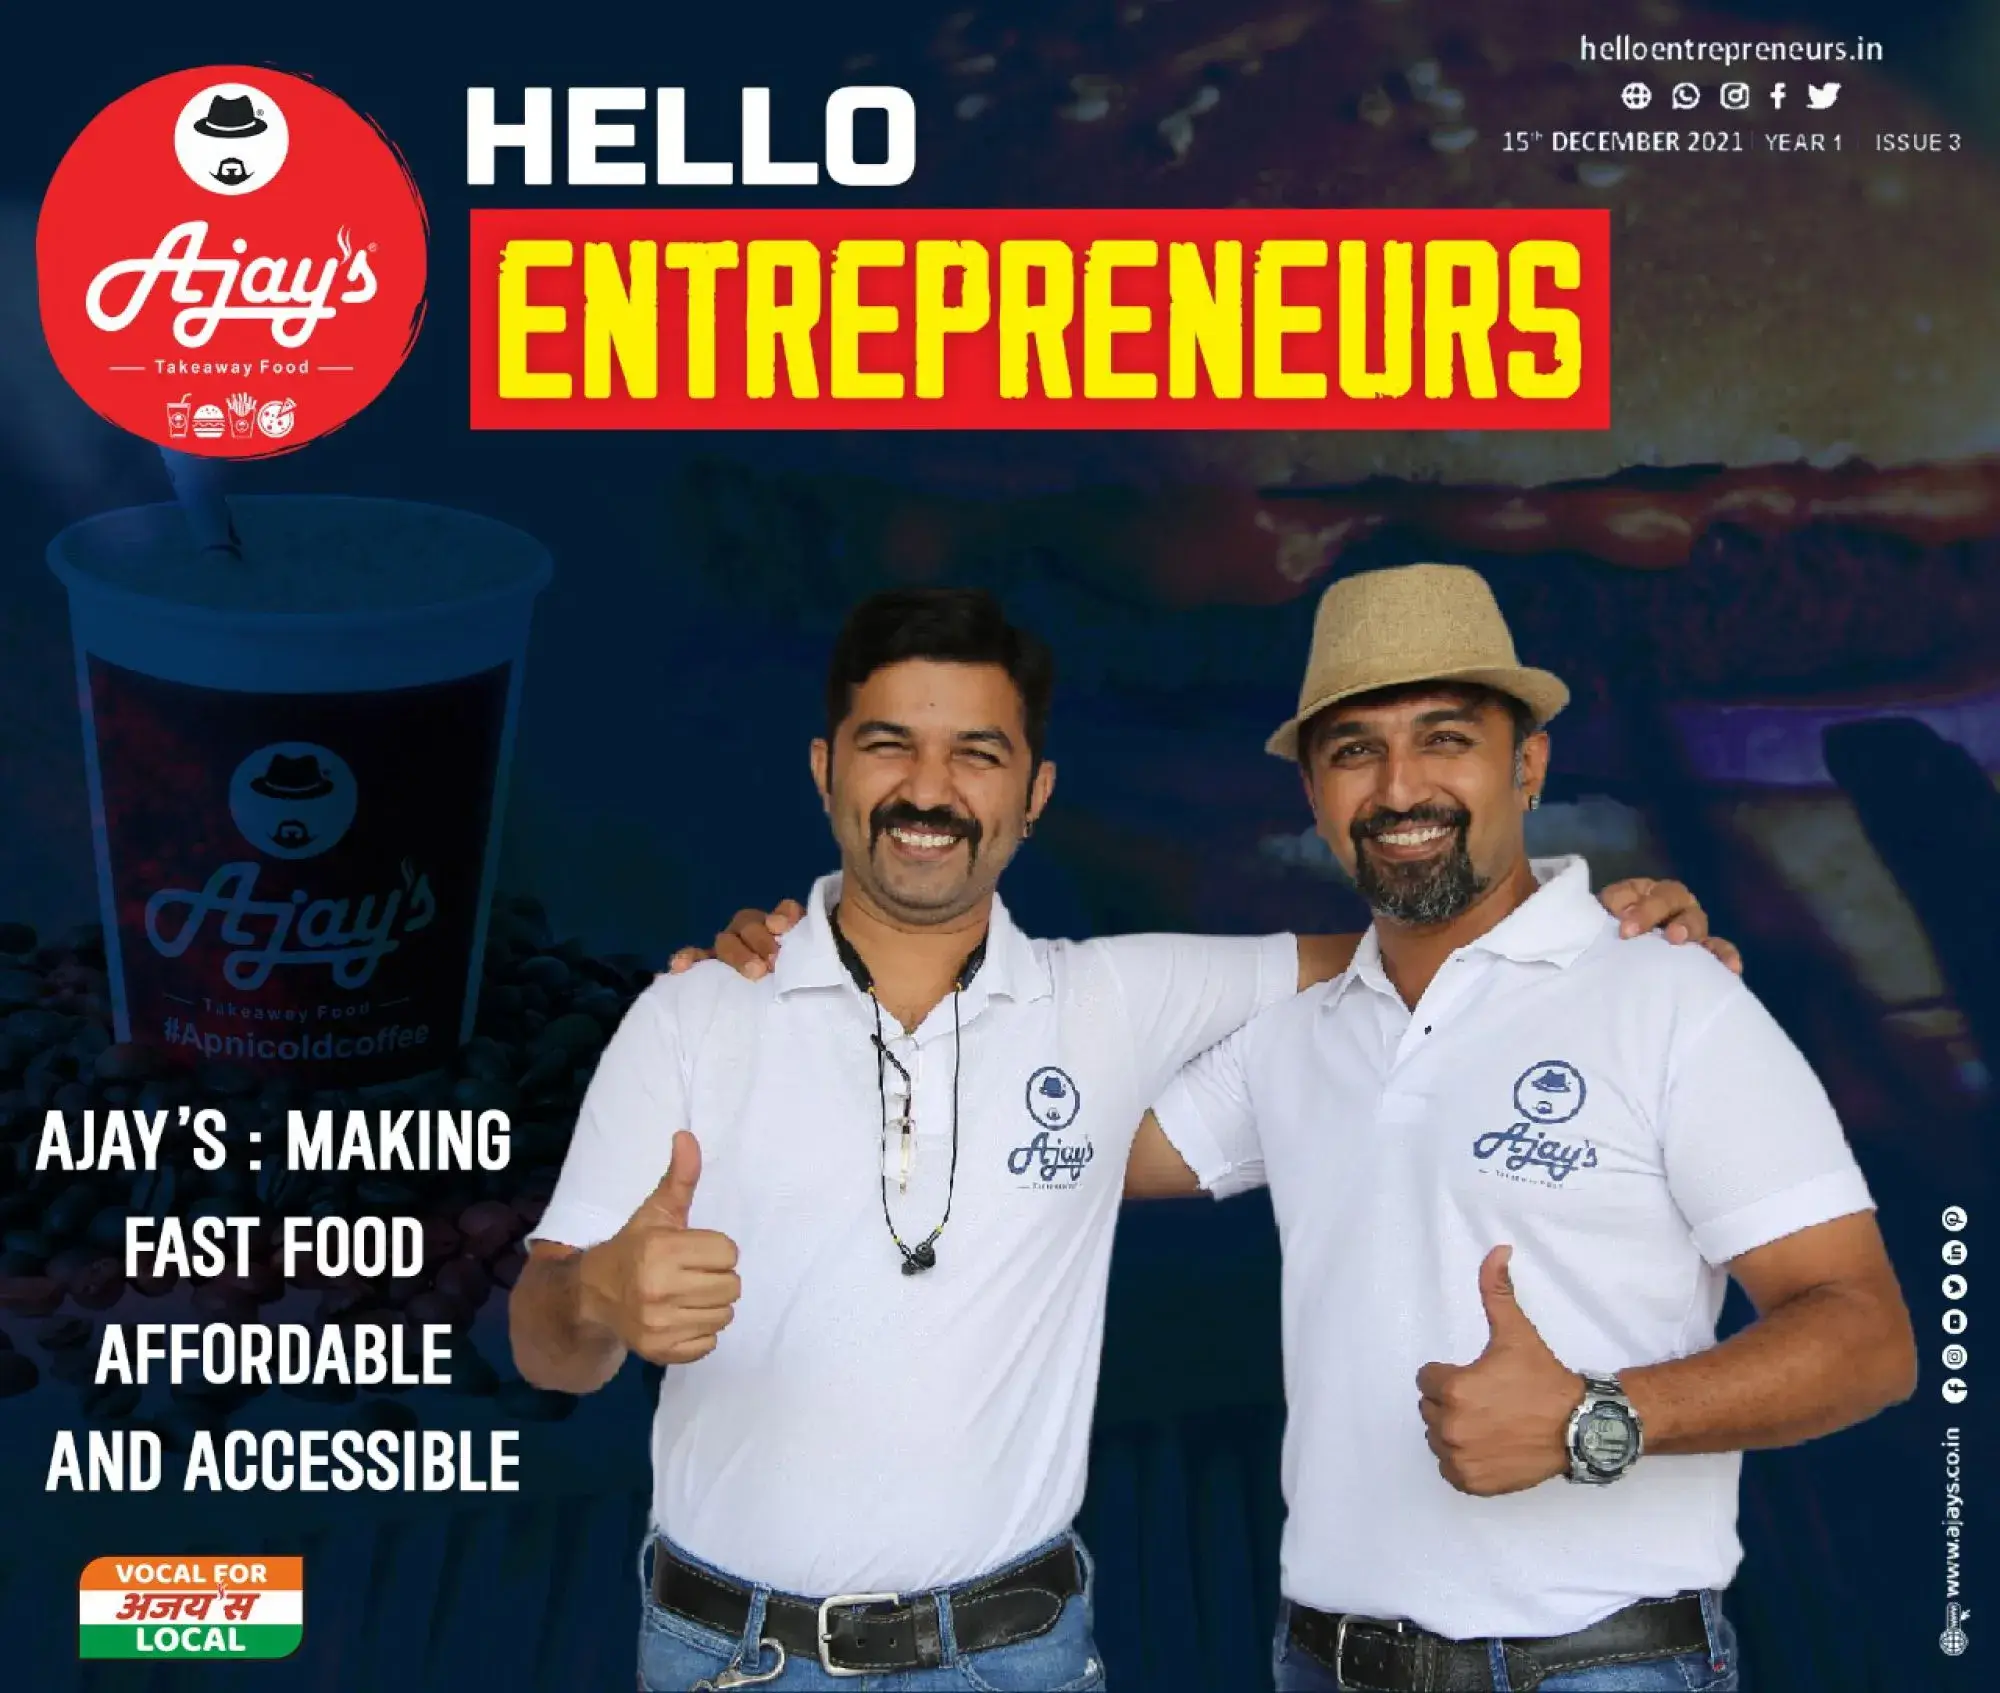 Entrepreneurs Ajay’s